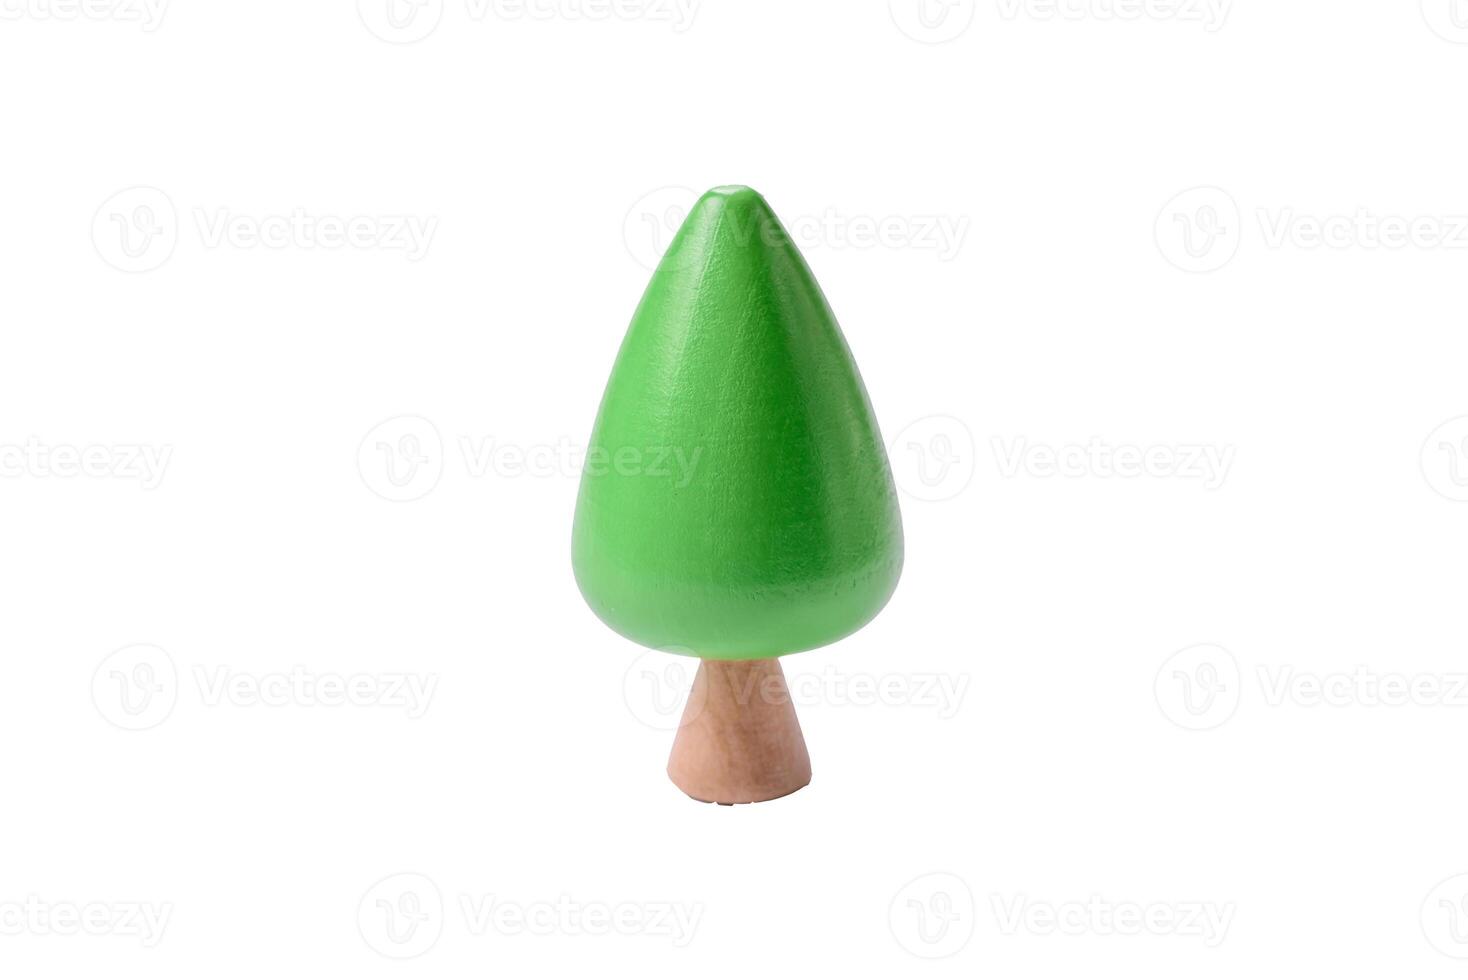 de madeira modelo do uma árvore com uma verde coroa e tronco em uma branco fundo foto